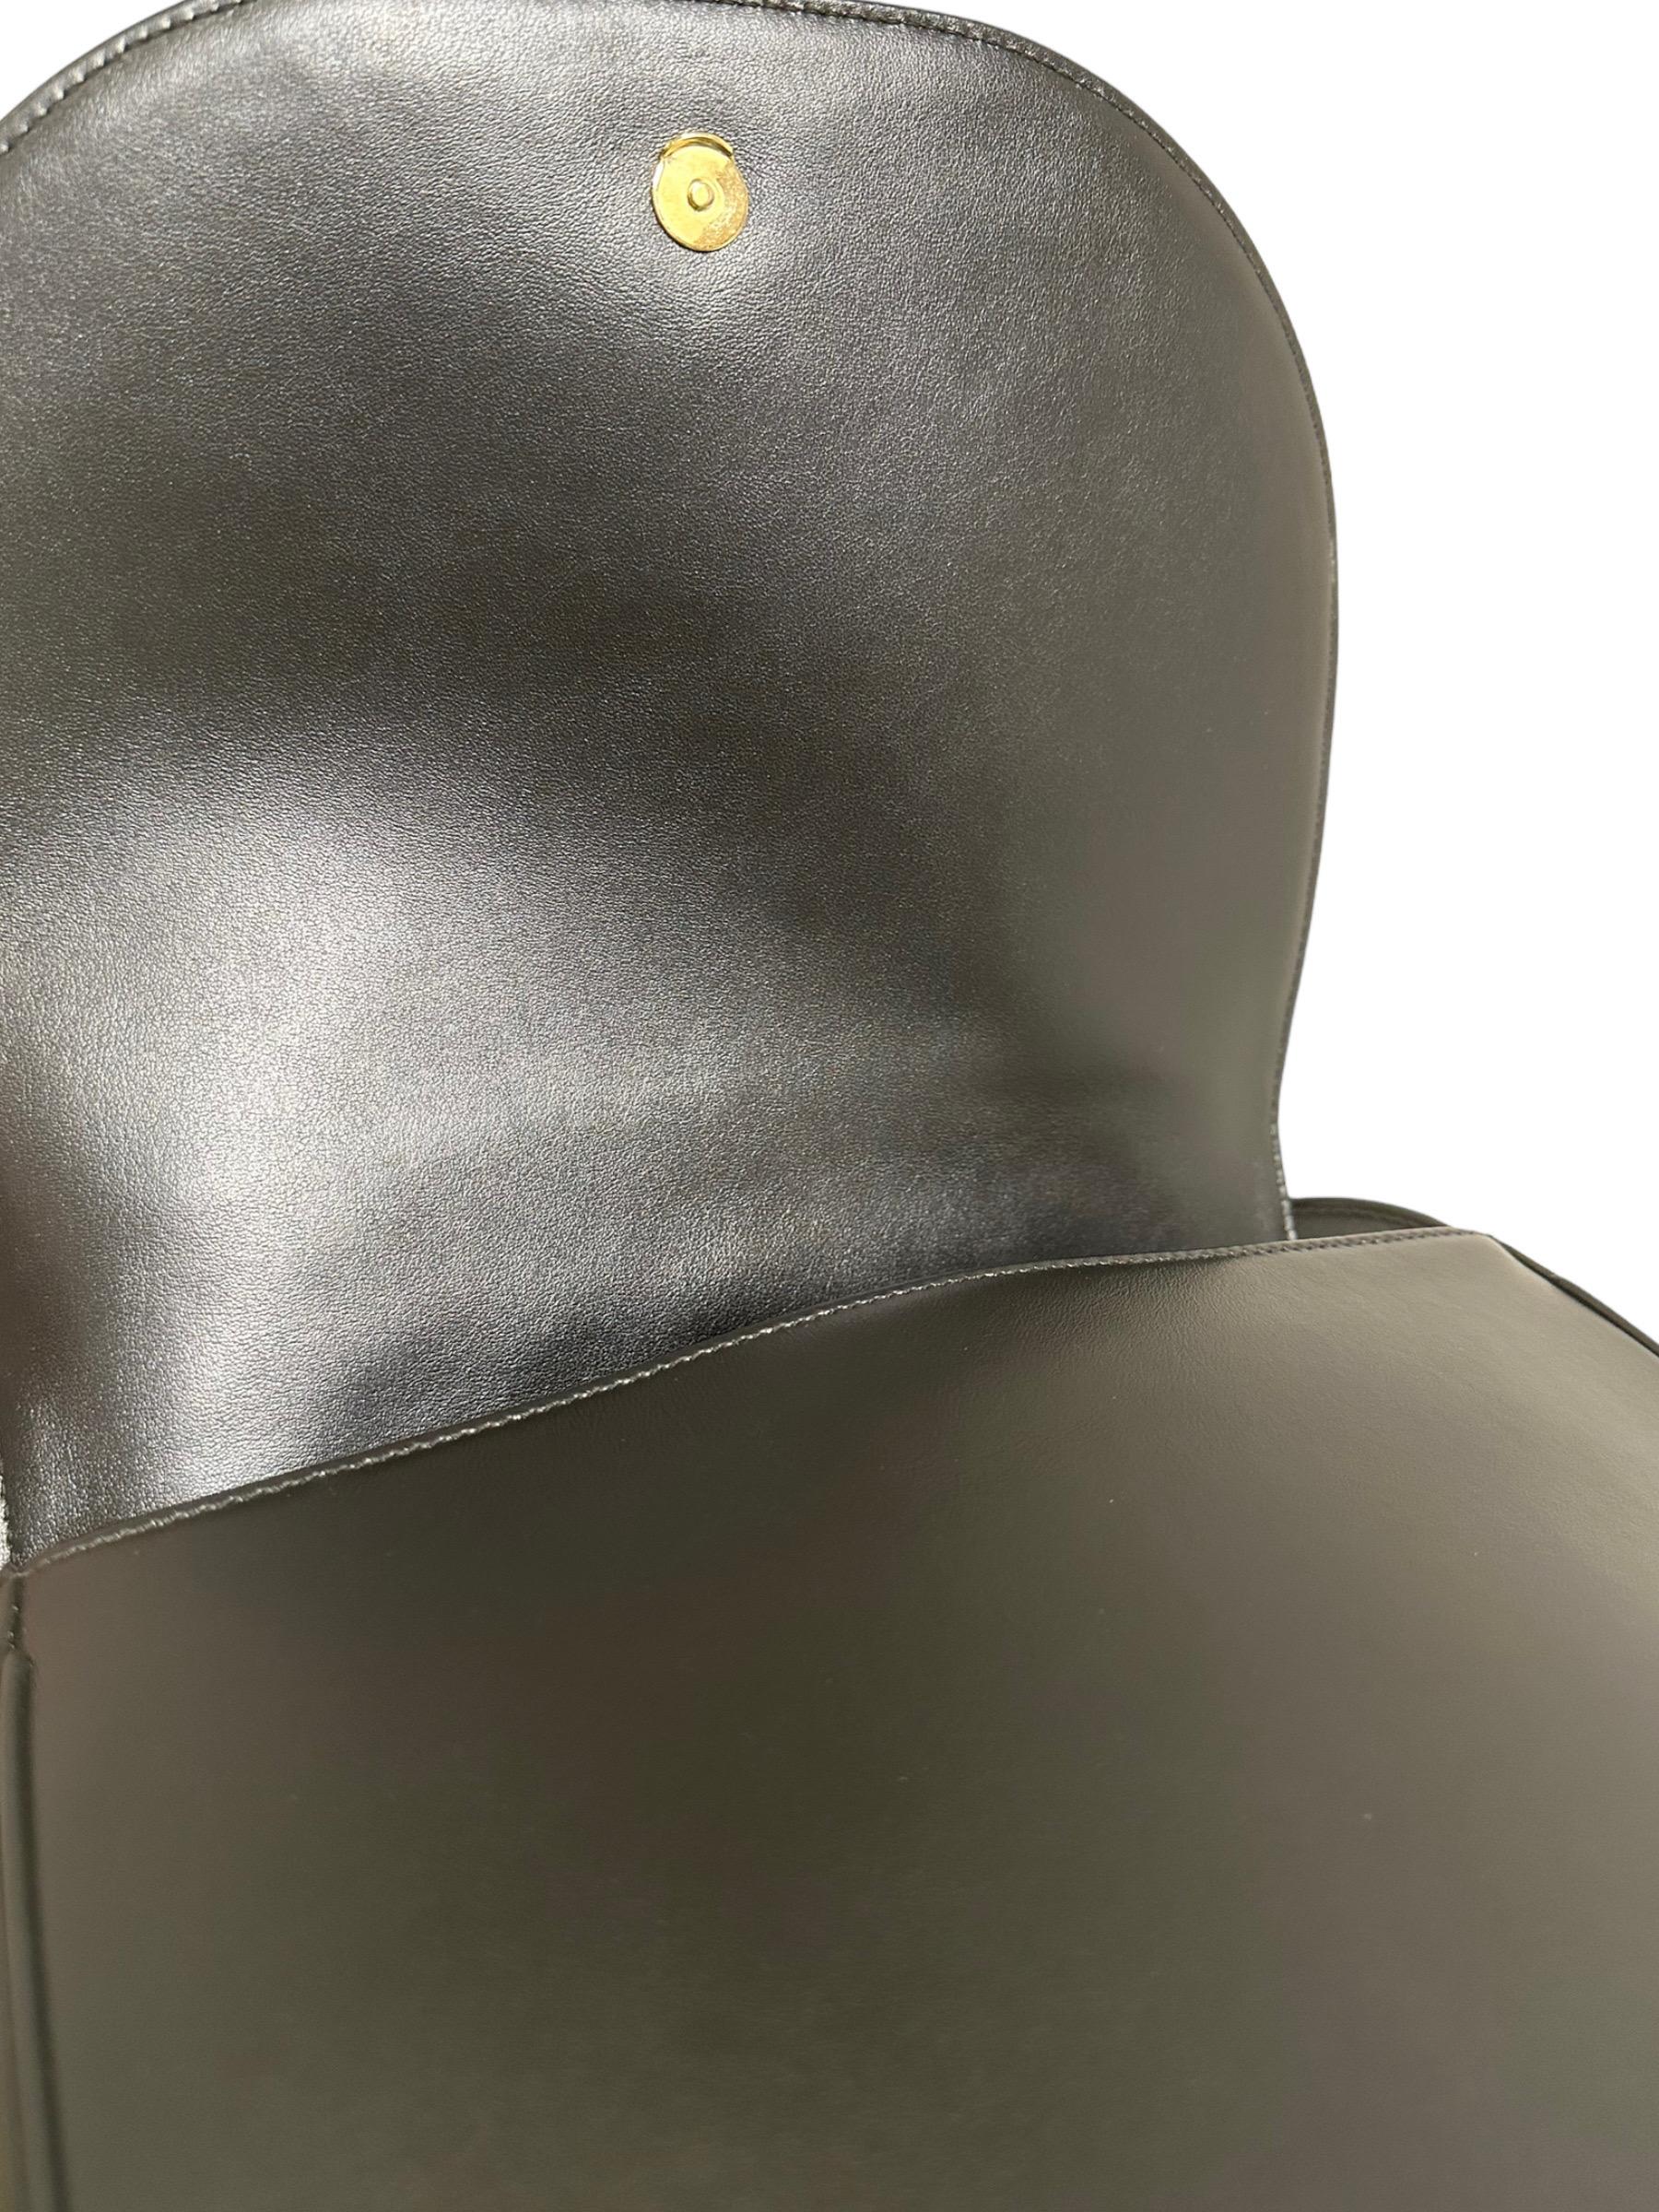 Saint Laurent Joan Black Leather Shoulder Bag 5